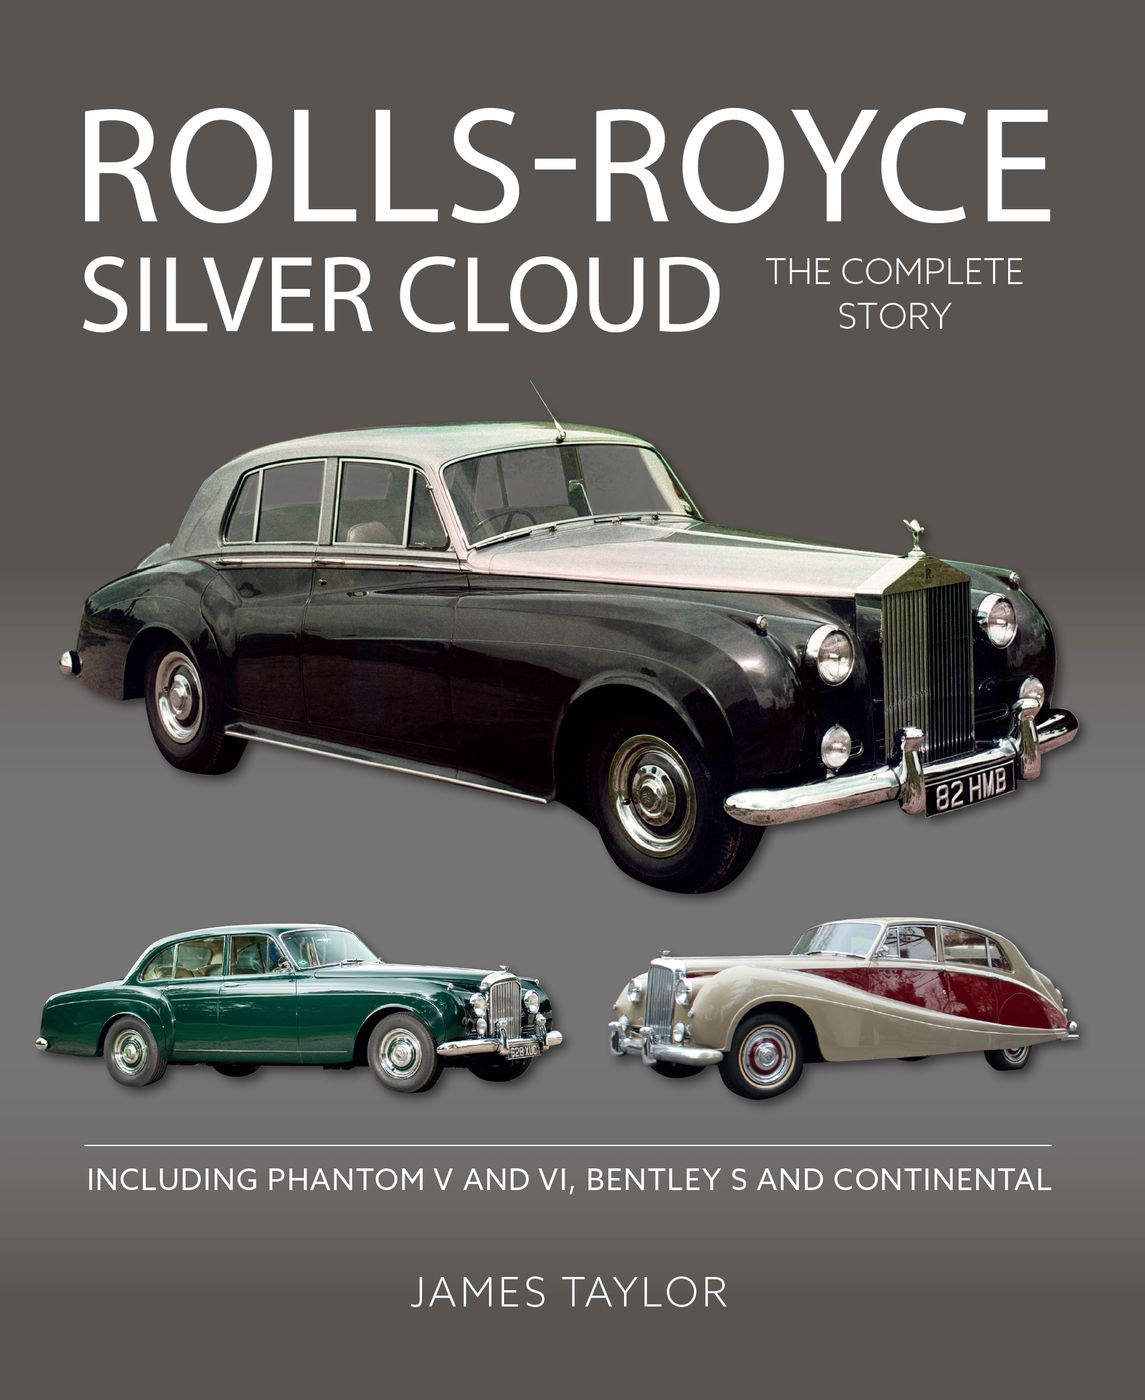 Rolls-Royce Silver Cloud
Rolls-Royce Silver Cloud
Rolls-Royce Si